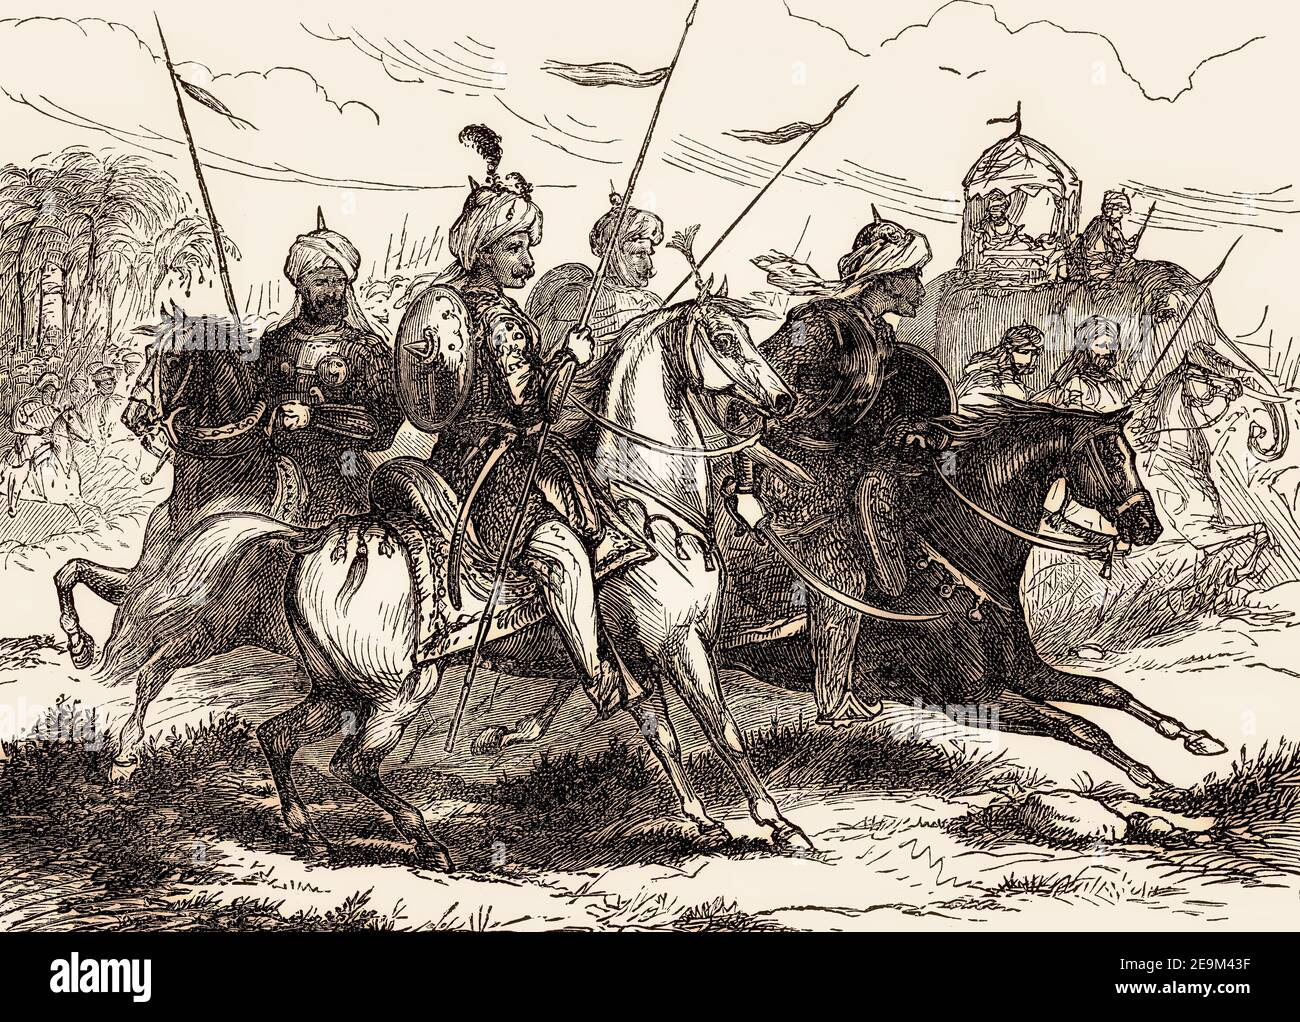 Kavallerie des Maratha-Imperiums, Dritter Anglo-Maratha-Krieg, Indien, 1818, aus britischen Schlachten auf Land und Meer, von James Grant Stockfoto